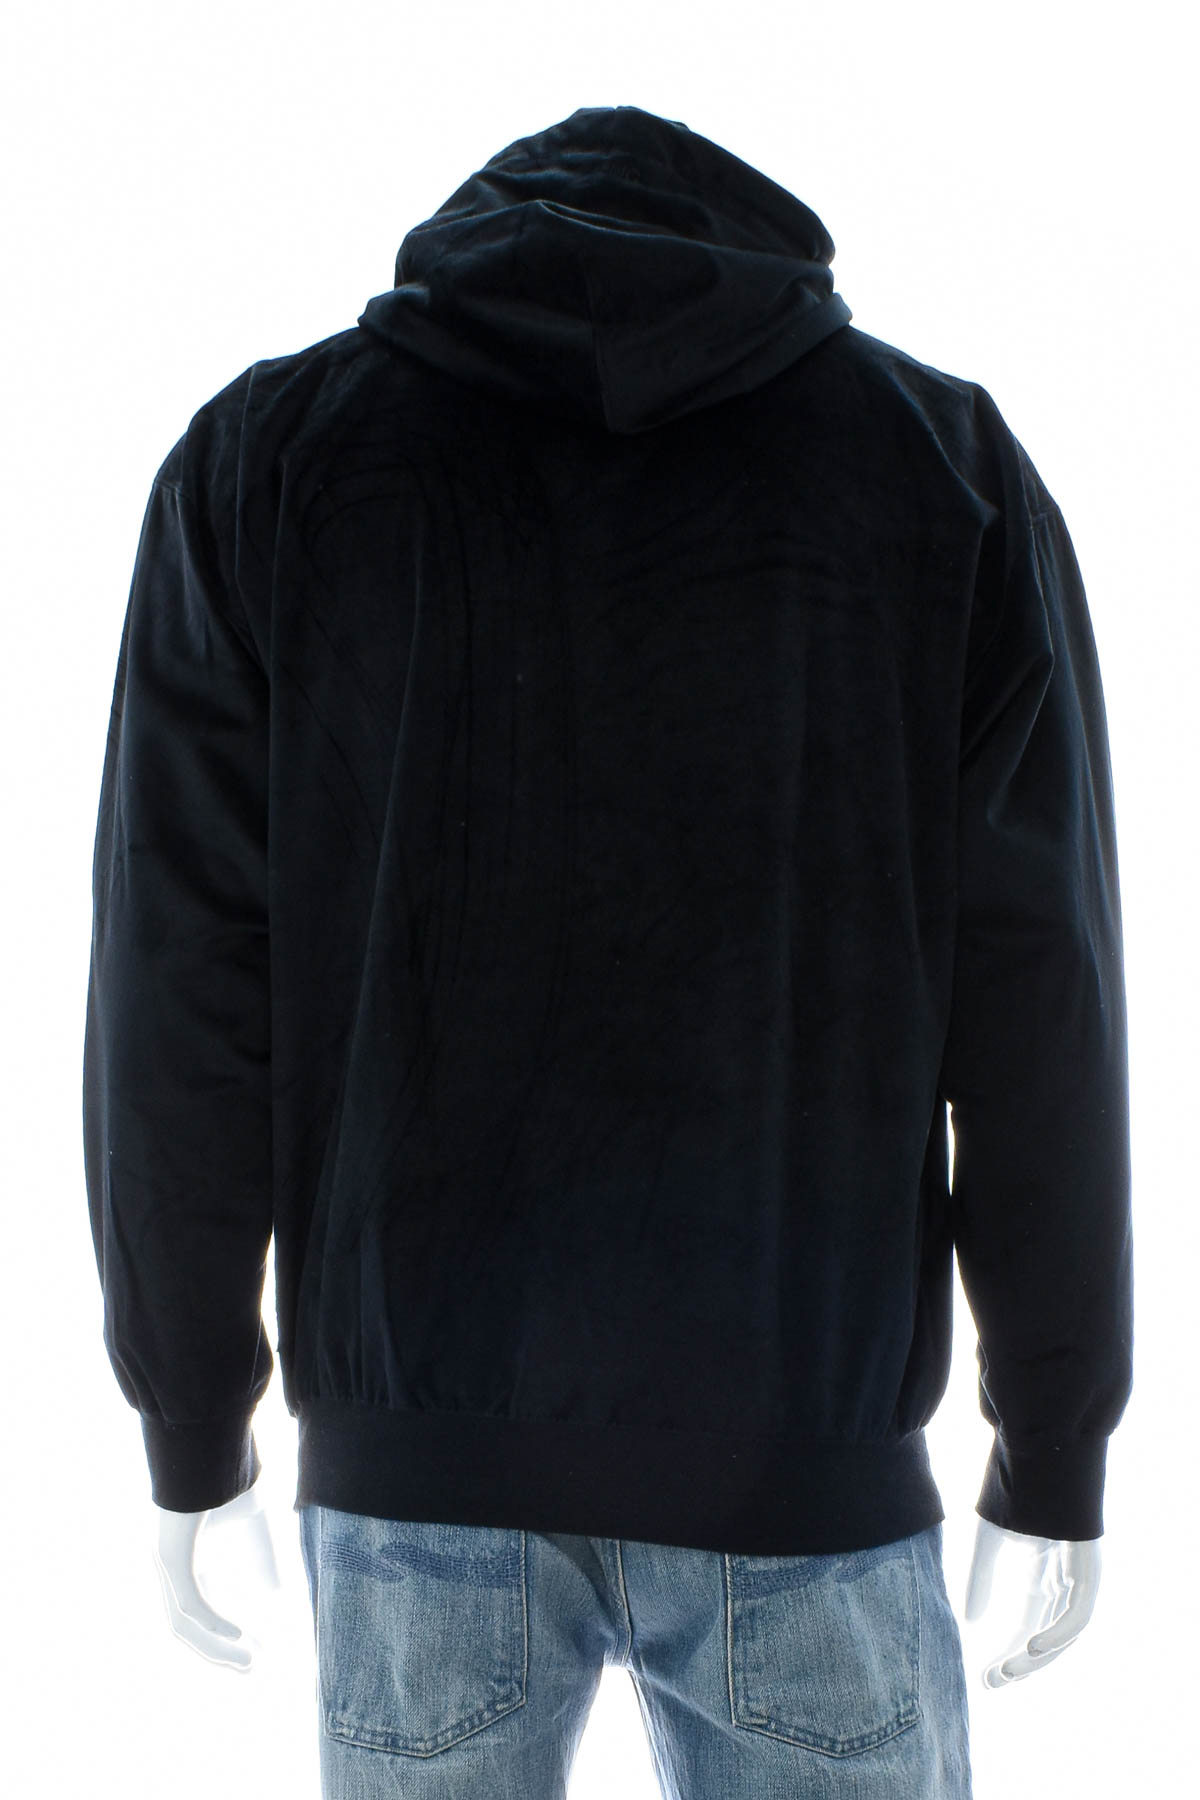 Men's sweatshirt - LMC - 1